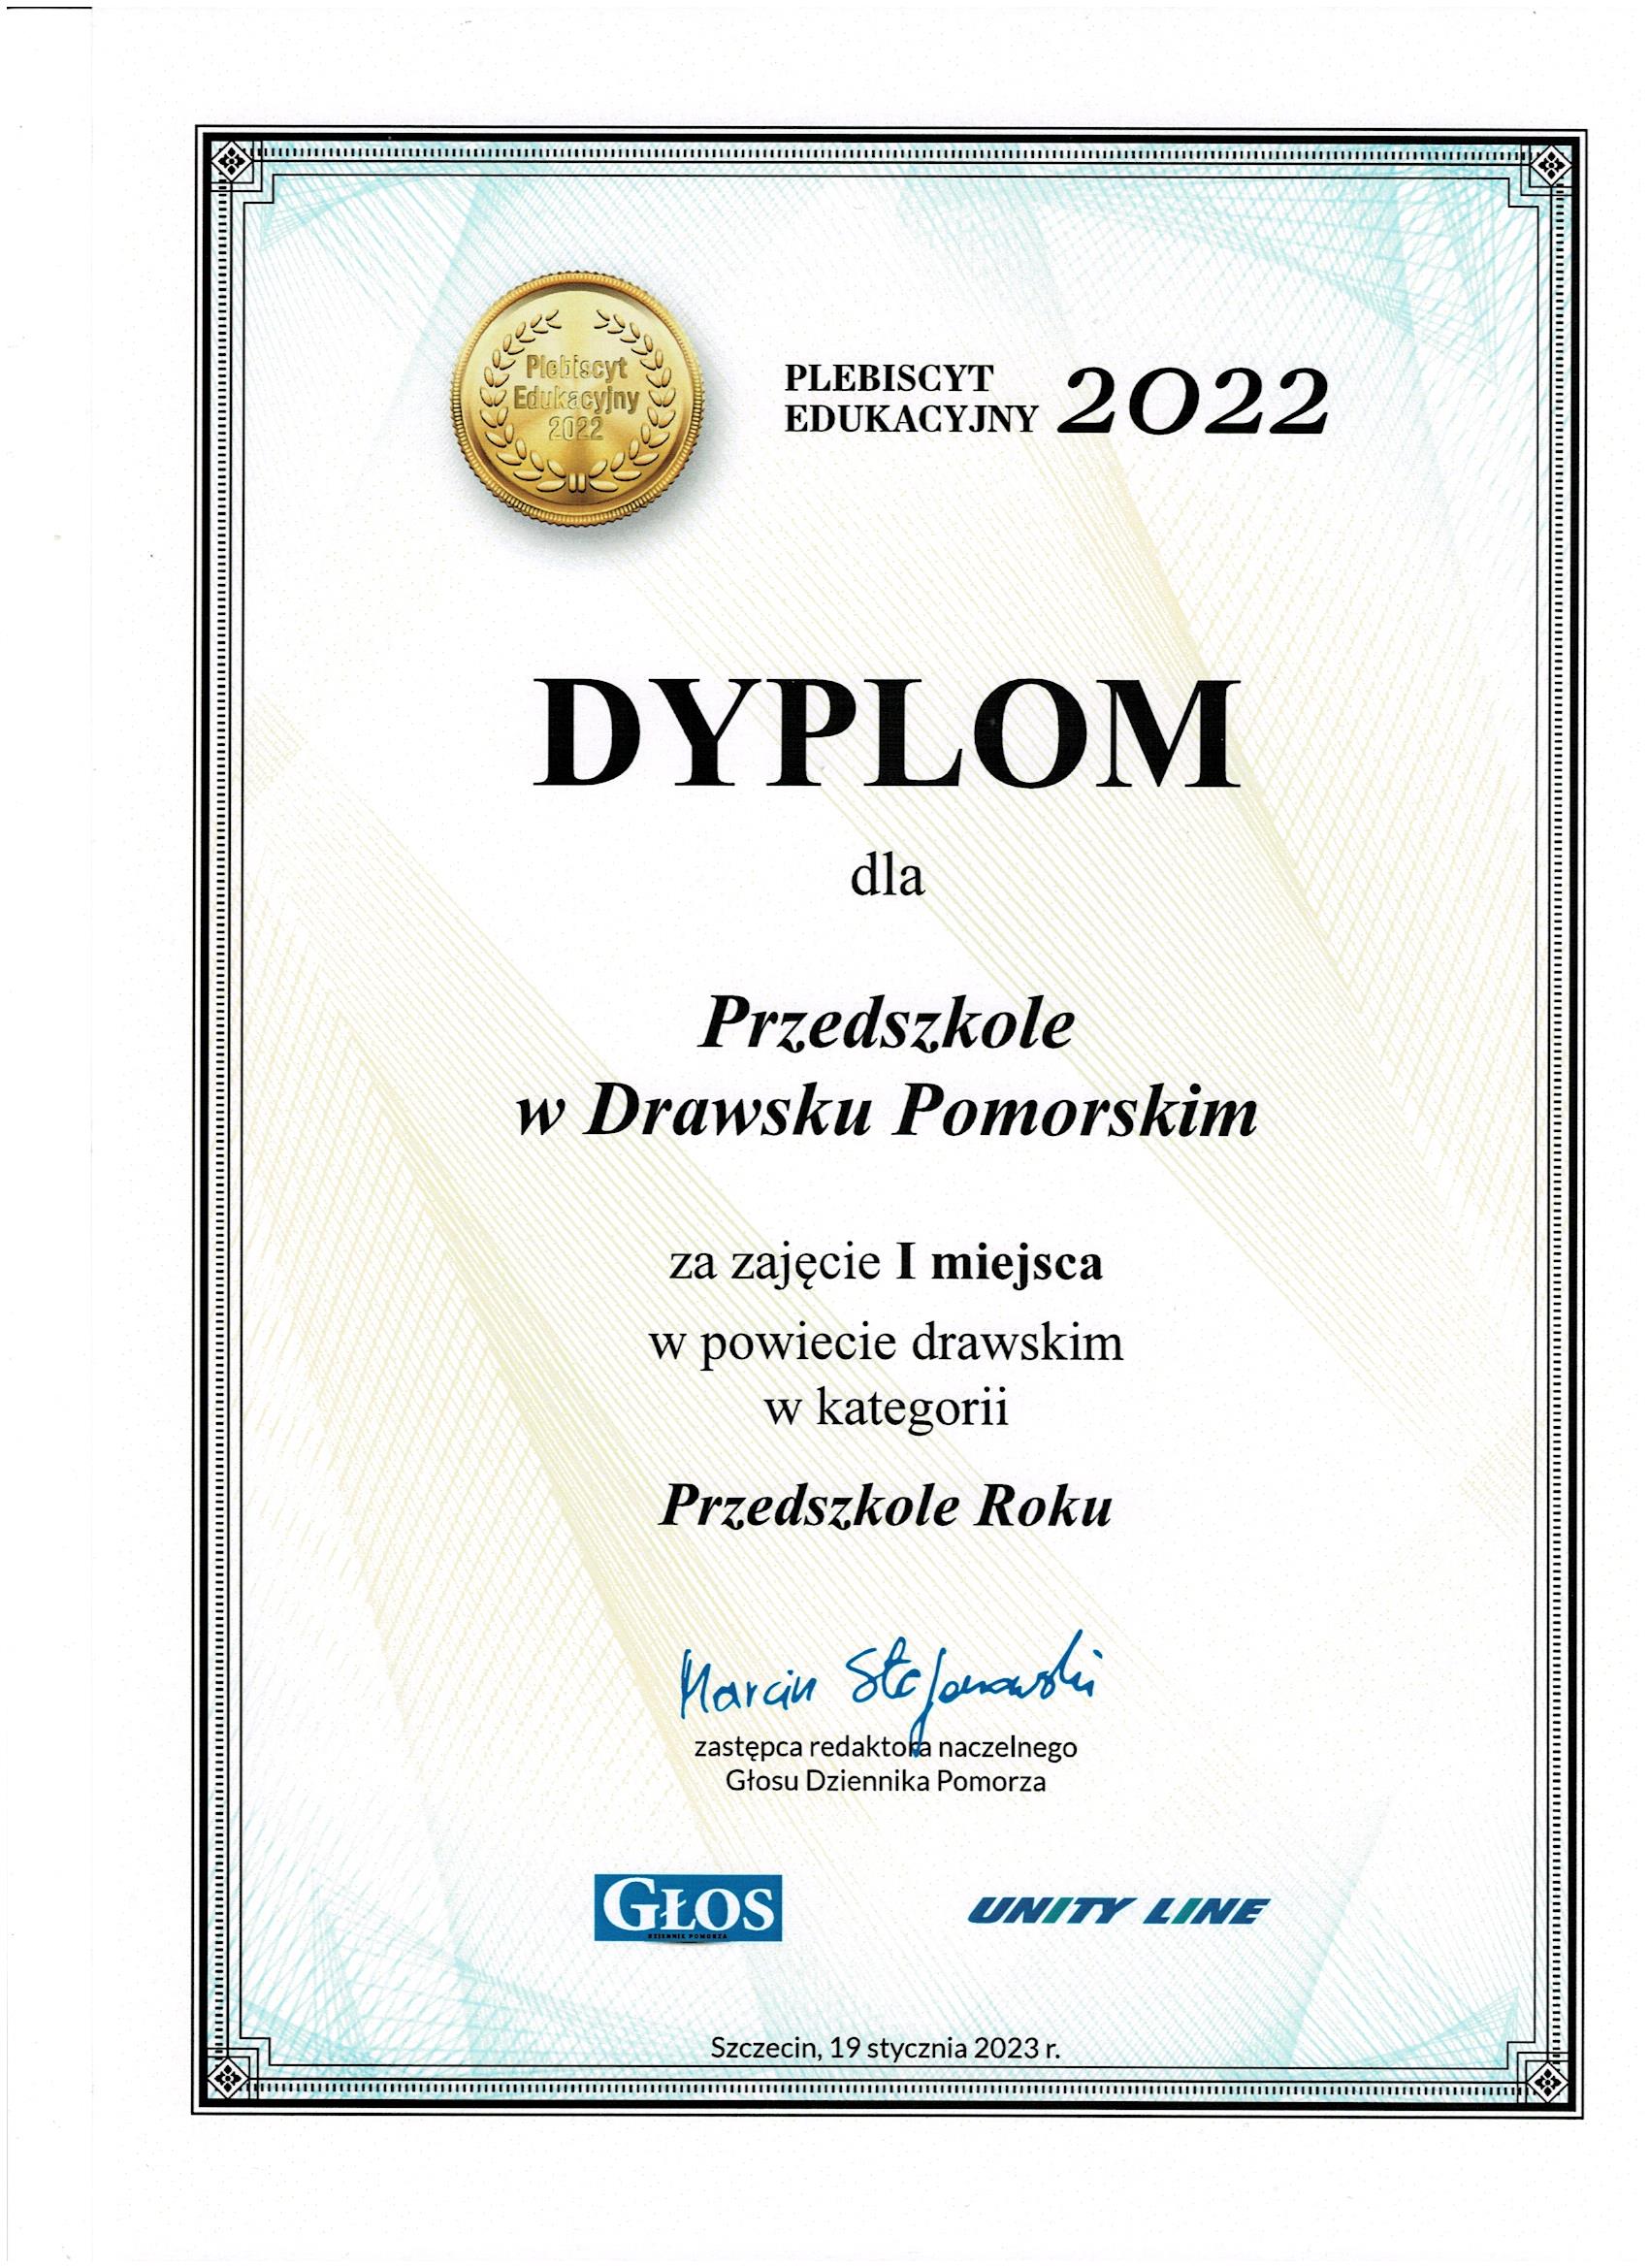 Dyplom dla drawskiego przedszkola w Ogólnopolskim Plebiscycie Edukacyjnym 2022